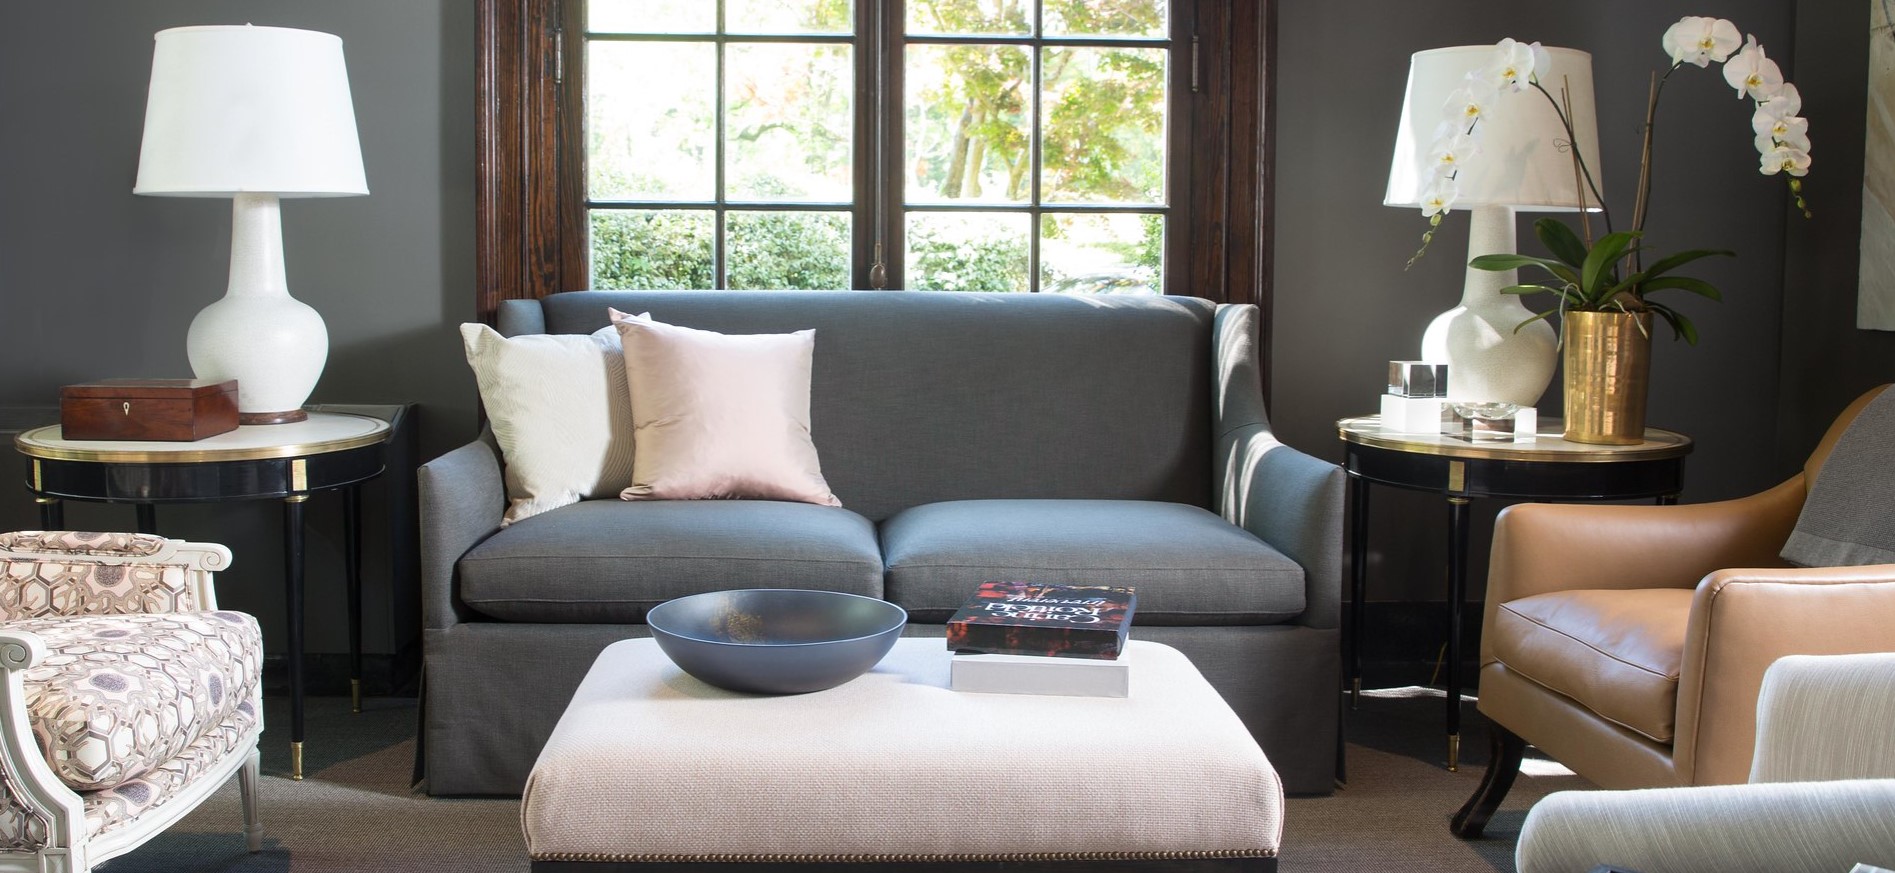 Небольшой диван можно поставить возле окна и дополнить его стильными креслами